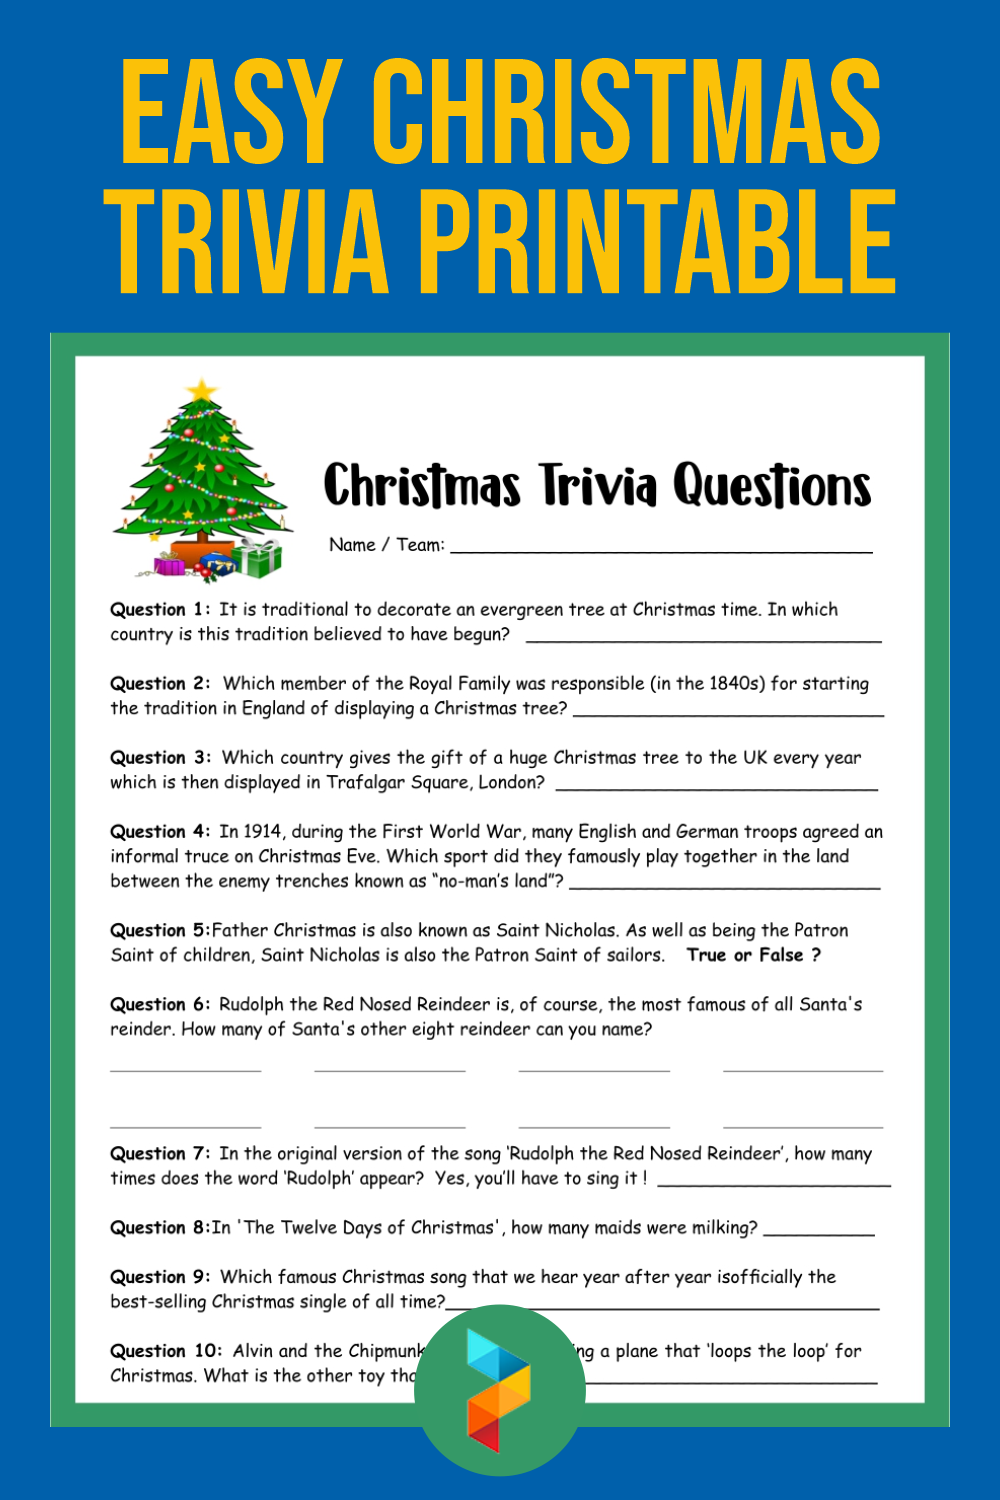 Easy Christmas Trivia Printable